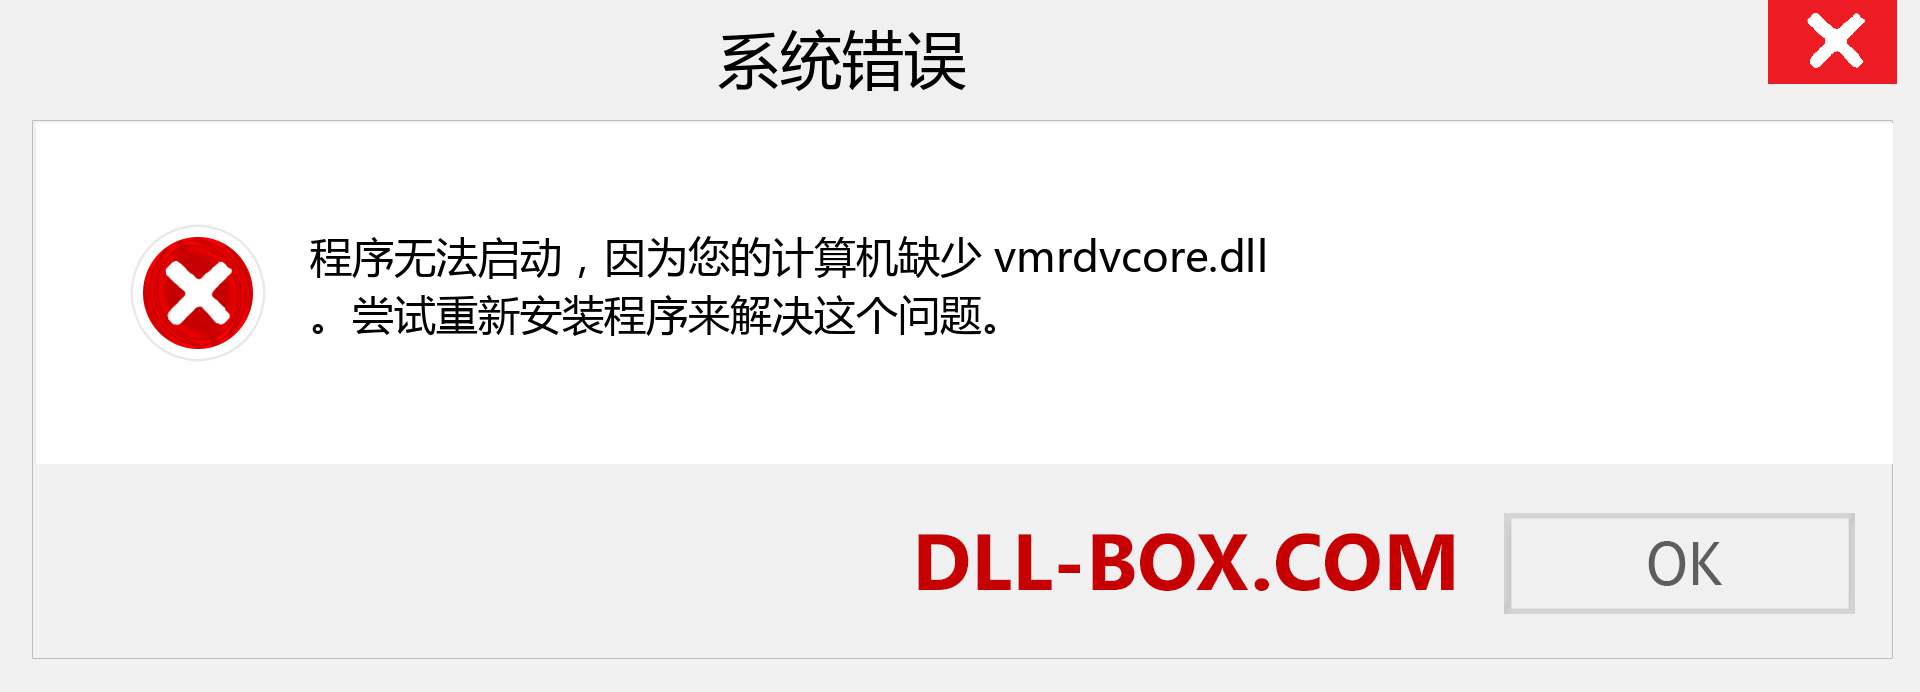 vmrdvcore.dll 文件丢失？。 适用于 Windows 7、8、10 的下载 - 修复 Windows、照片、图像上的 vmrdvcore dll 丢失错误